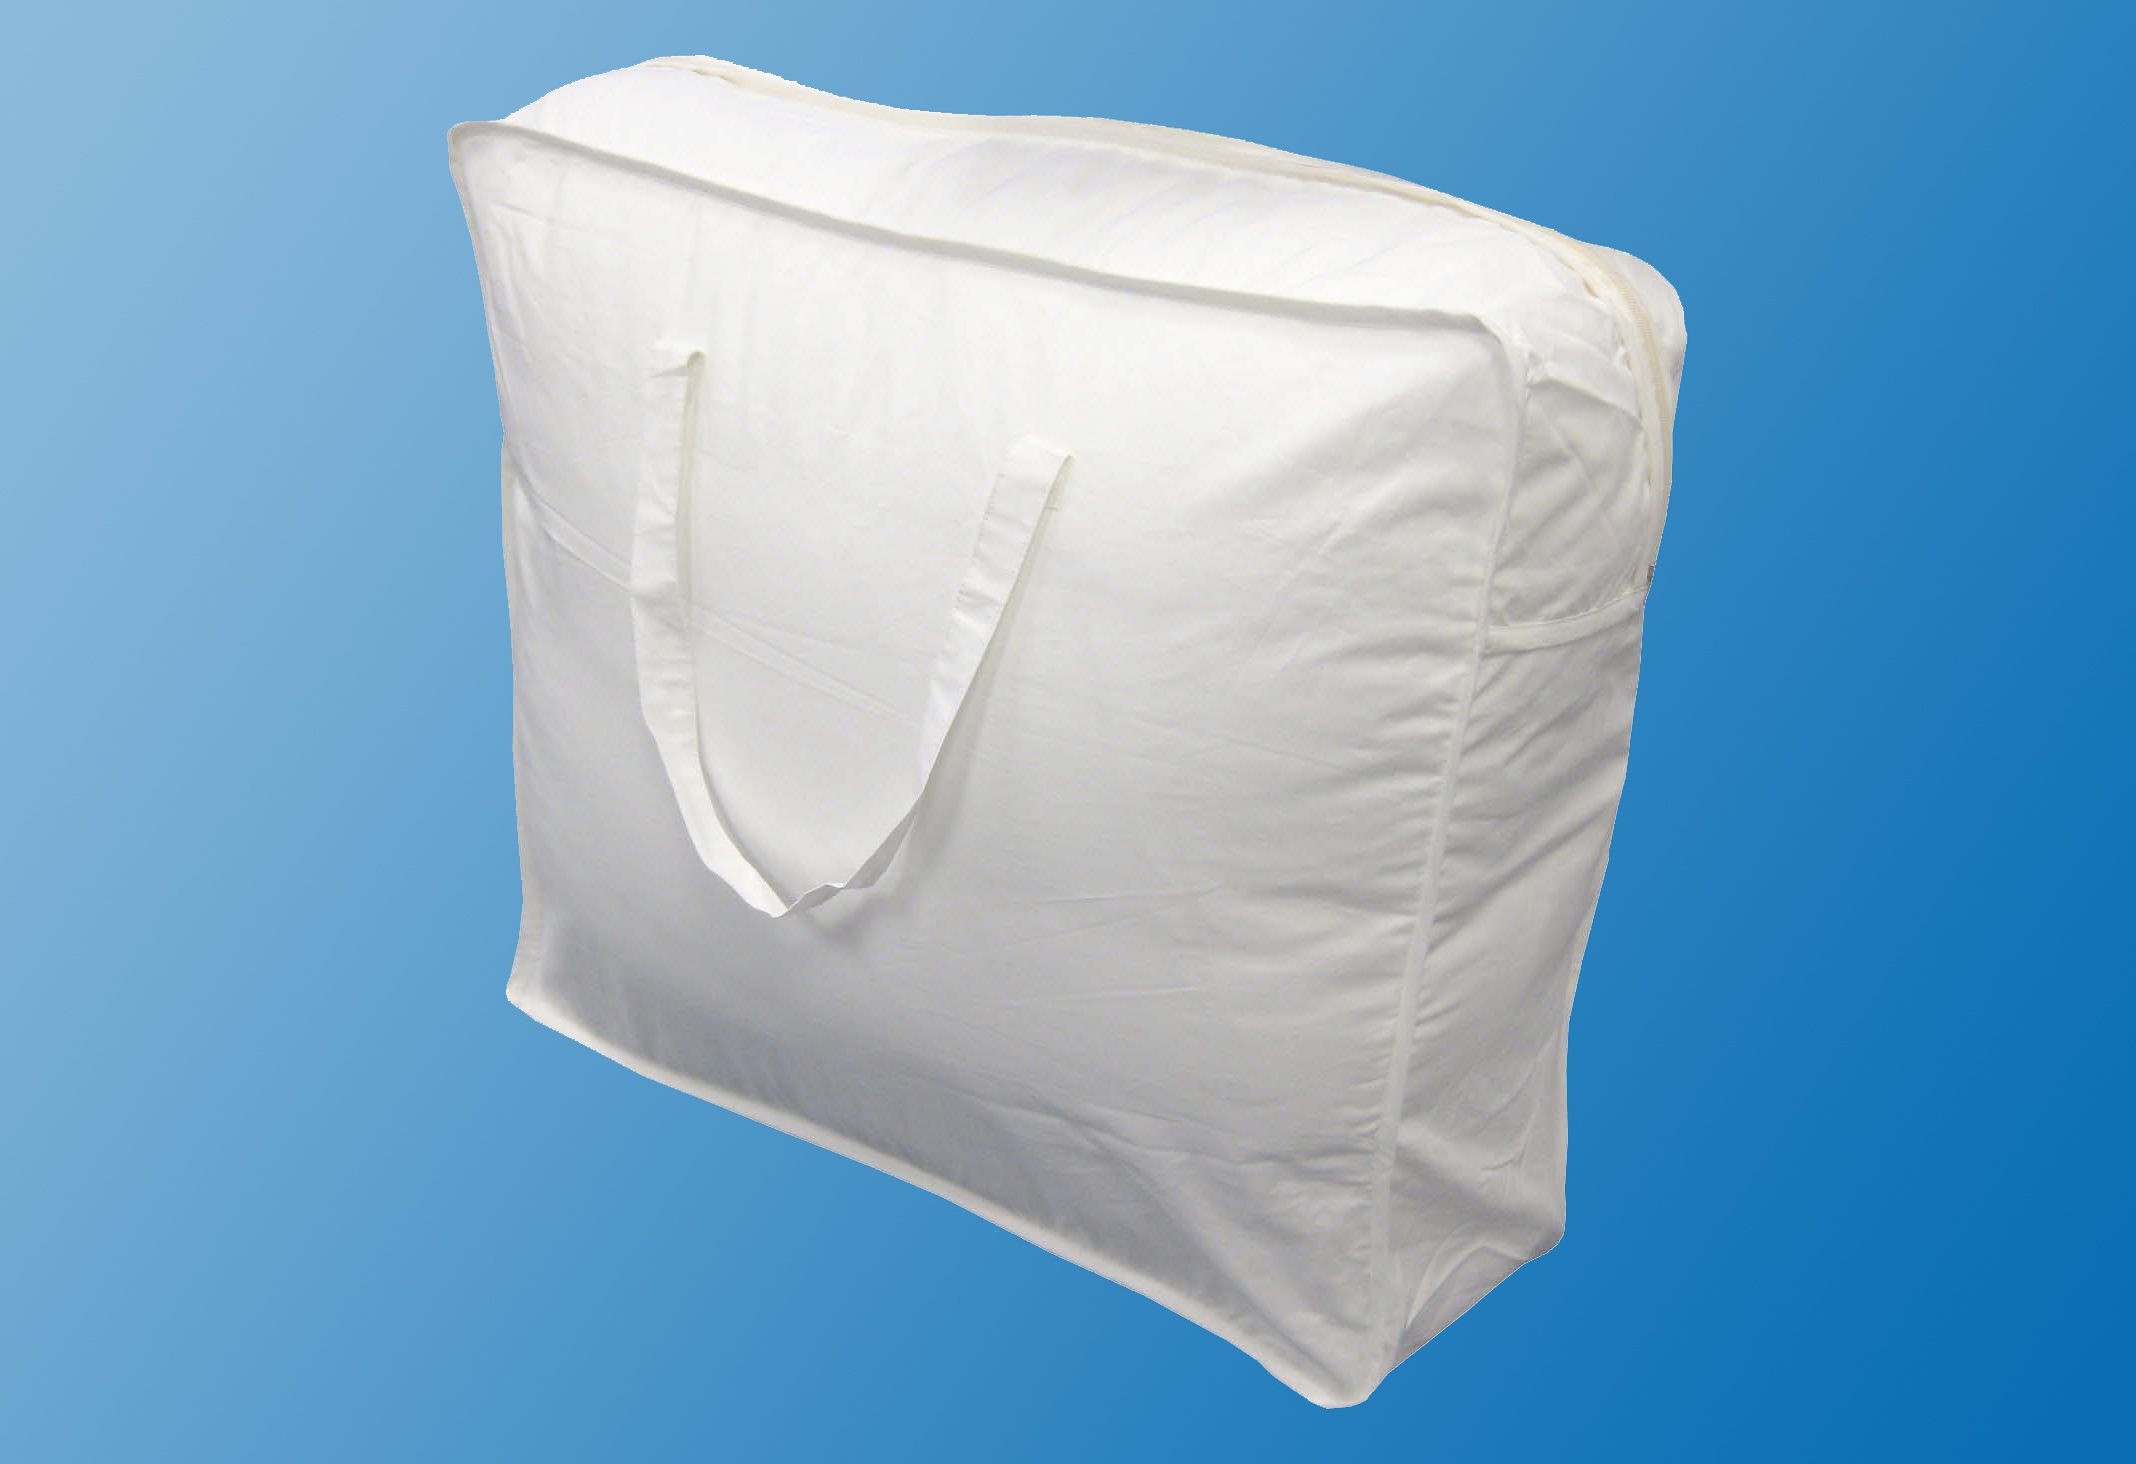 56cm*25cm*36cm waschbar Vi.yo Aufbewahrungstasche für Bettdecken Baumwolle und Leinen Tasche Verstauen Kissen Trage-Tasche für Bettzeug oder Matratzenauflagen style1 Starke Griffe